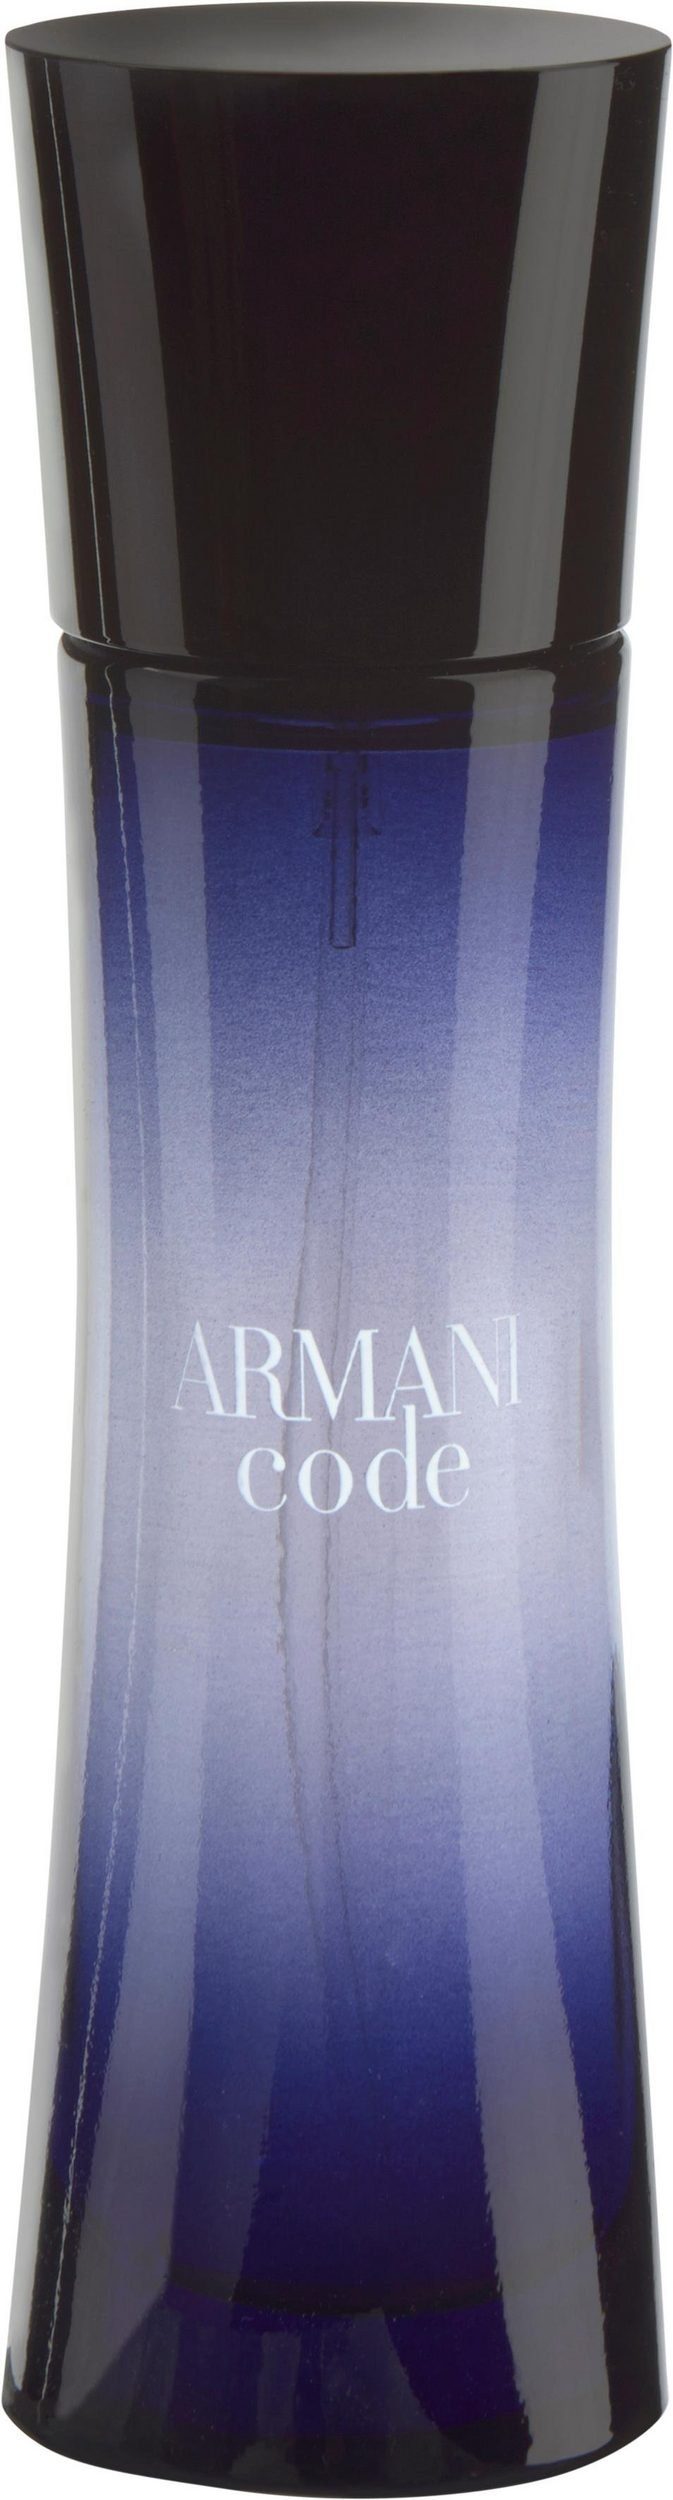 Pour Giorgio Armani ml Armani Eau 50 Code Eau Femme Parfum de de Parfum